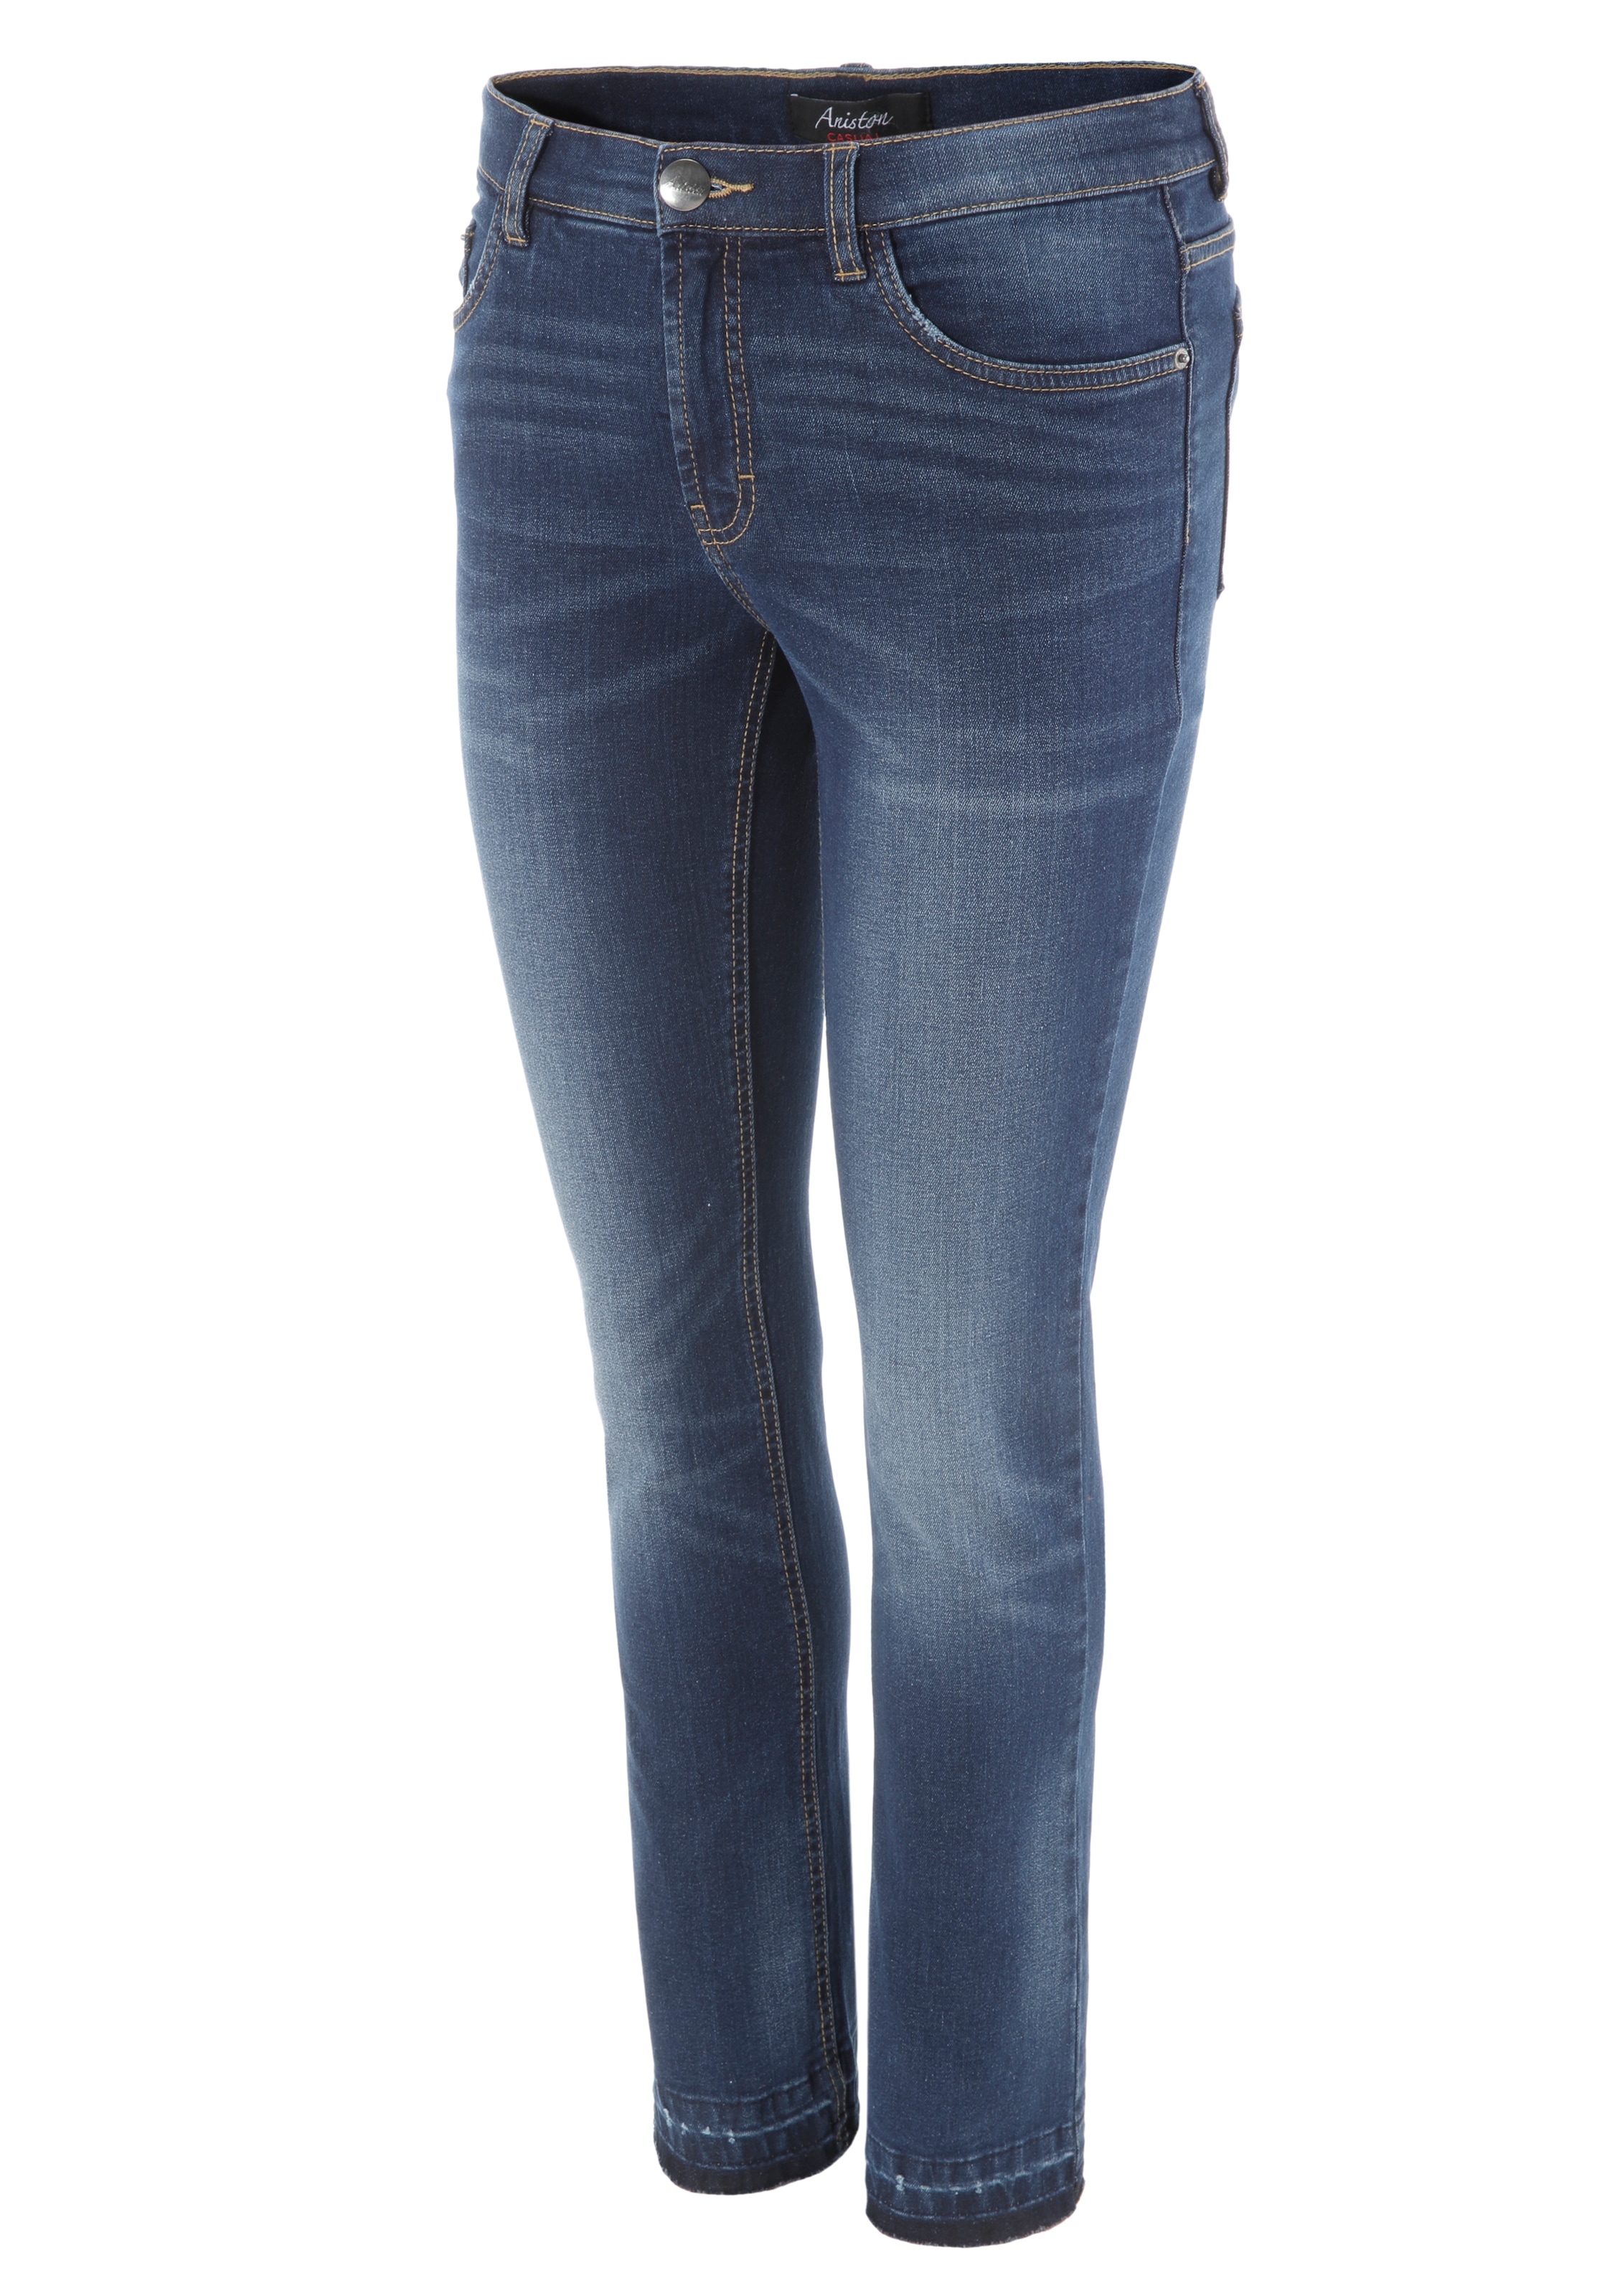 Aniston CASUAL Waschung shoppen am trendiger Beinabschluss Bootcut-Jeans, ausgefranstem leicht mit